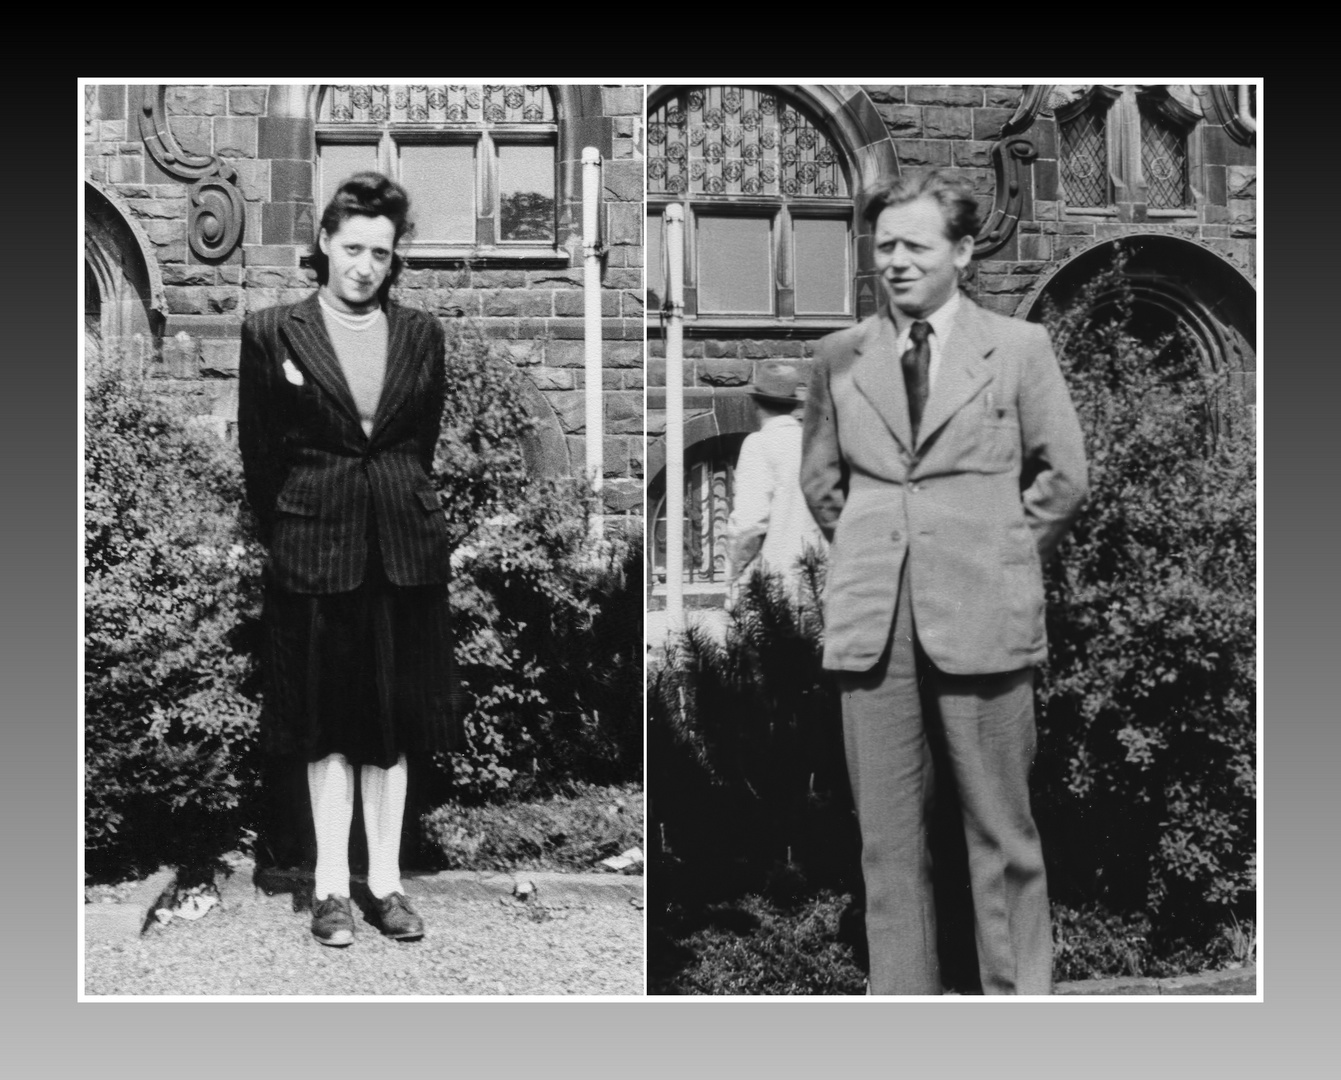 Wie dazumal - Meine Eltern 1951 in Remscheid